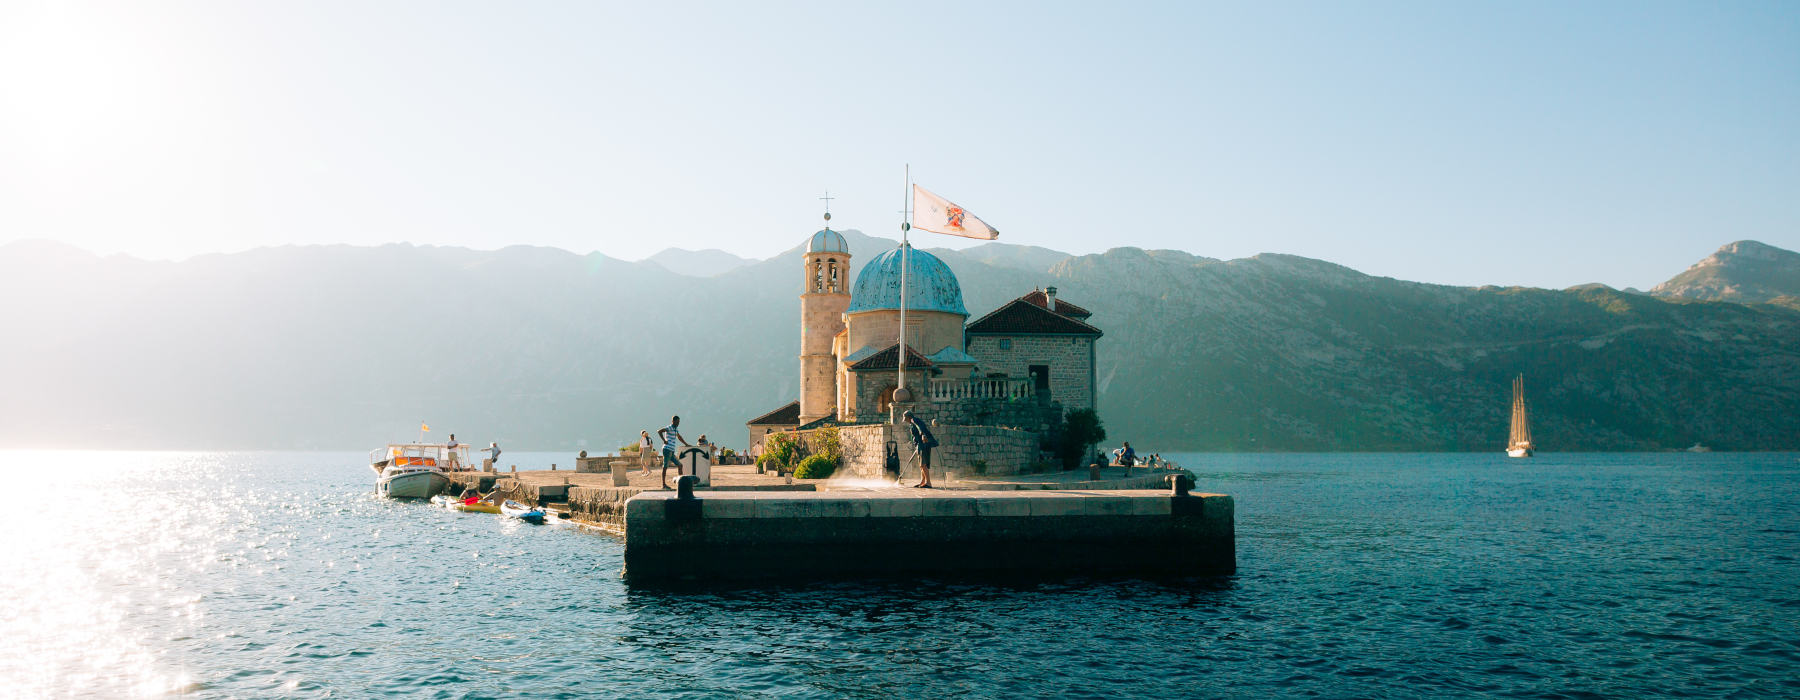 Montenegro<br class="hidden-md hidden-lg" /> Undertourism Holidays